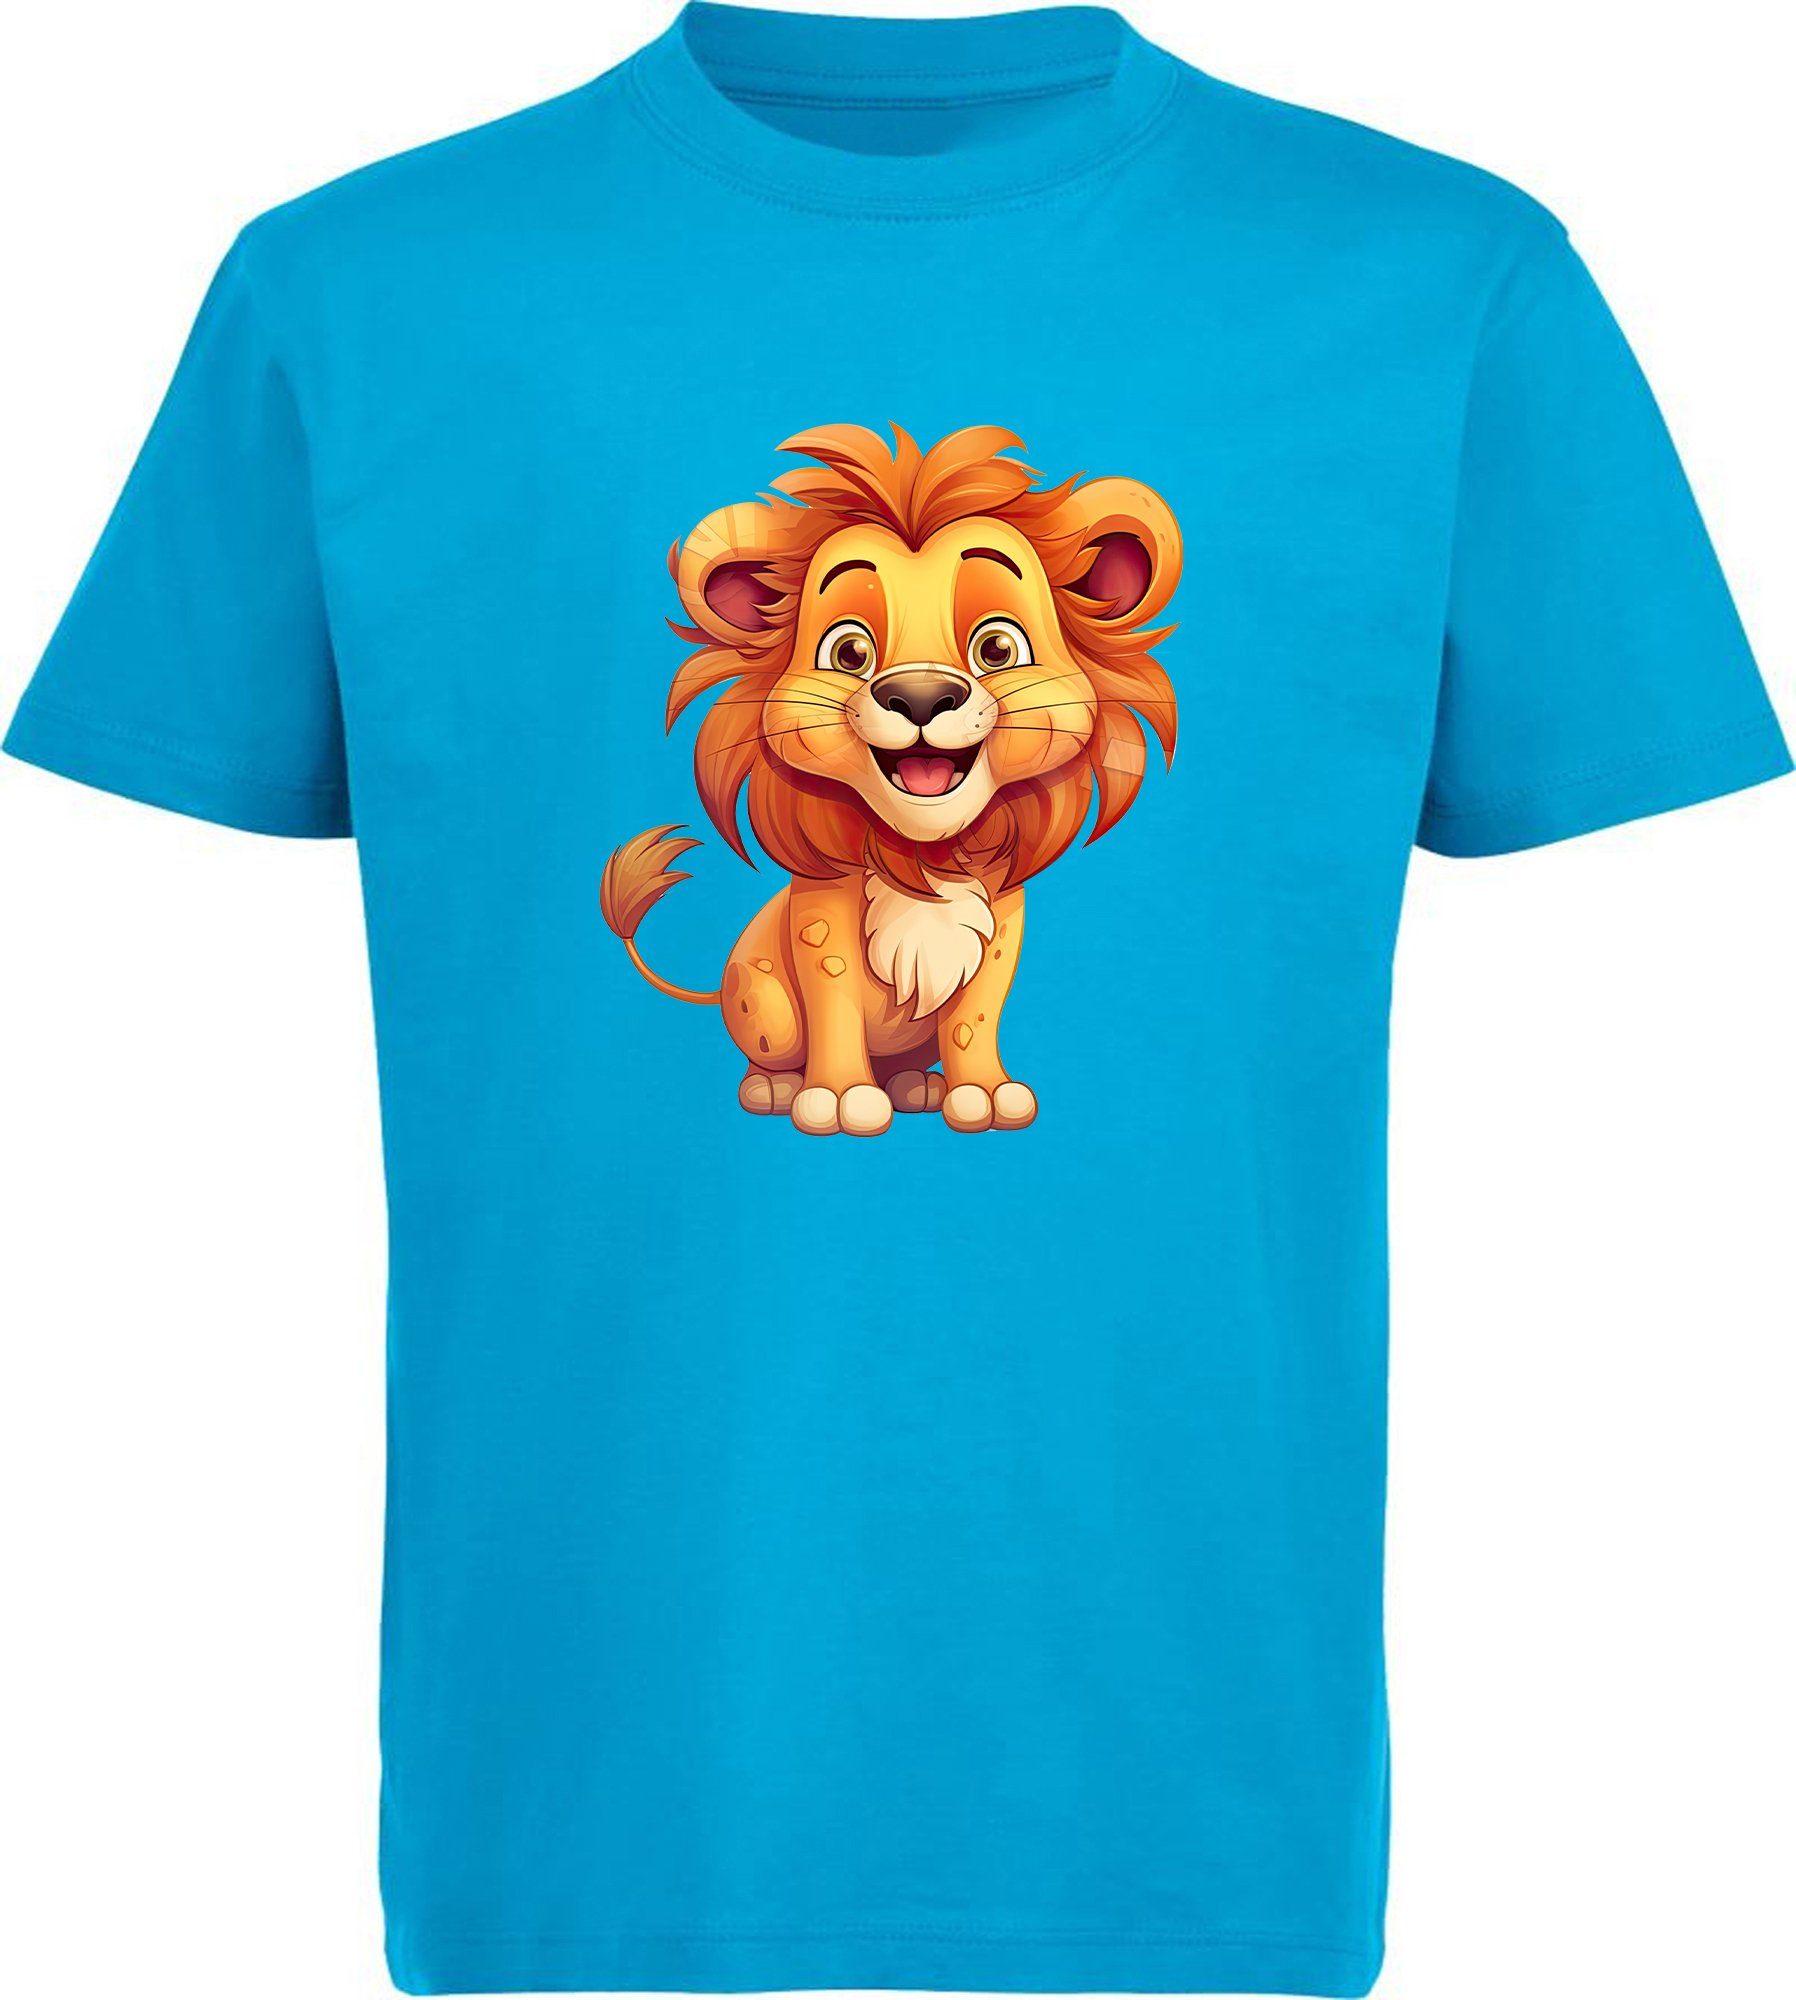 MyDesign24 T-Shirt Kinder Baby Baumwollshirt Shirt blau Löwe - i275 Aufdruck, Wildtier mit aqua bedruckt Print